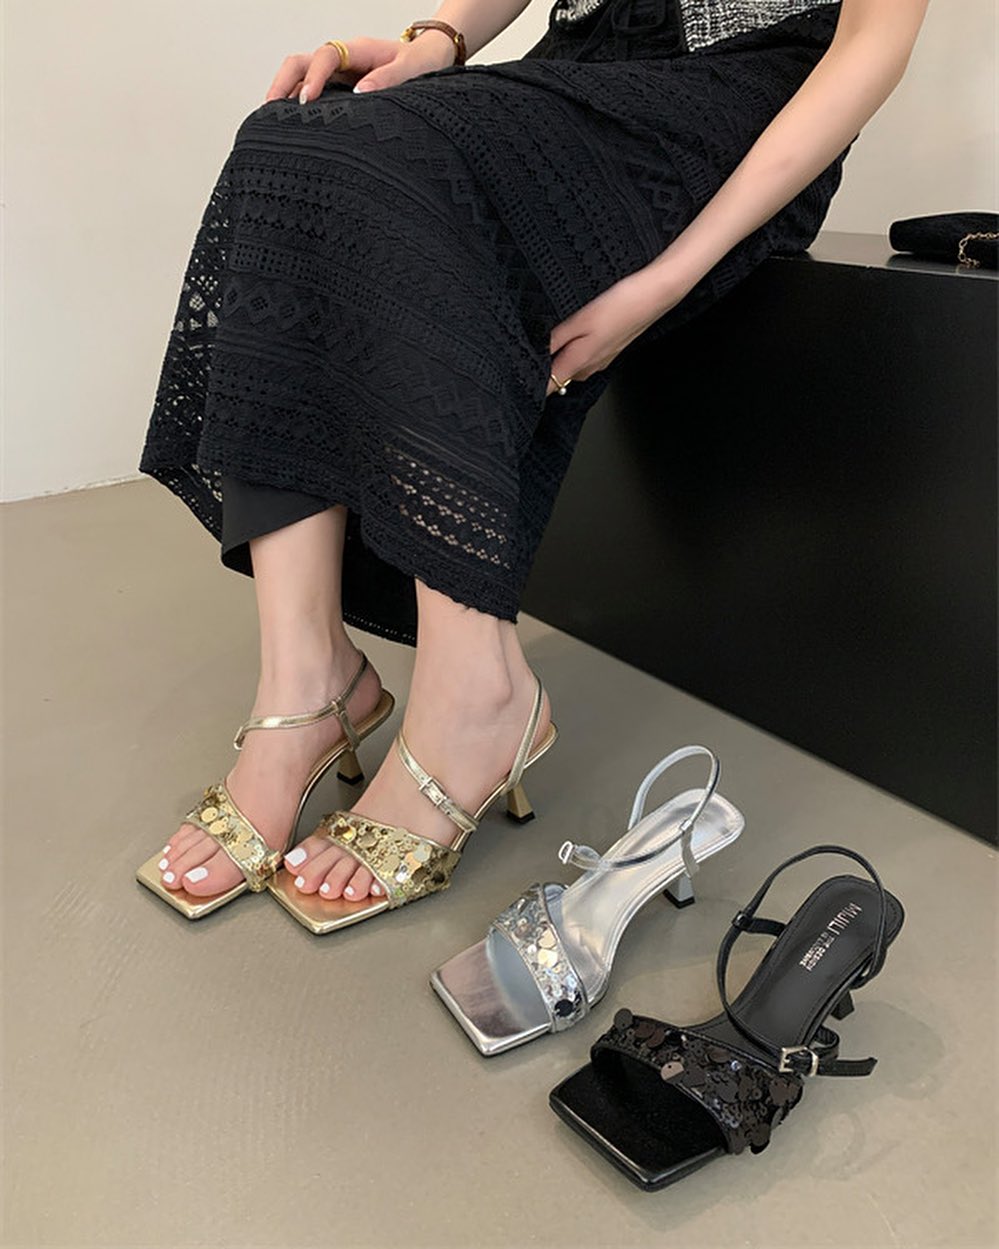 3 shop order giày dép Quảng Châu trên Instagram: Liên tục cập nhật mẫu hot, giá thành cực “yêu thương”- Ảnh 4.